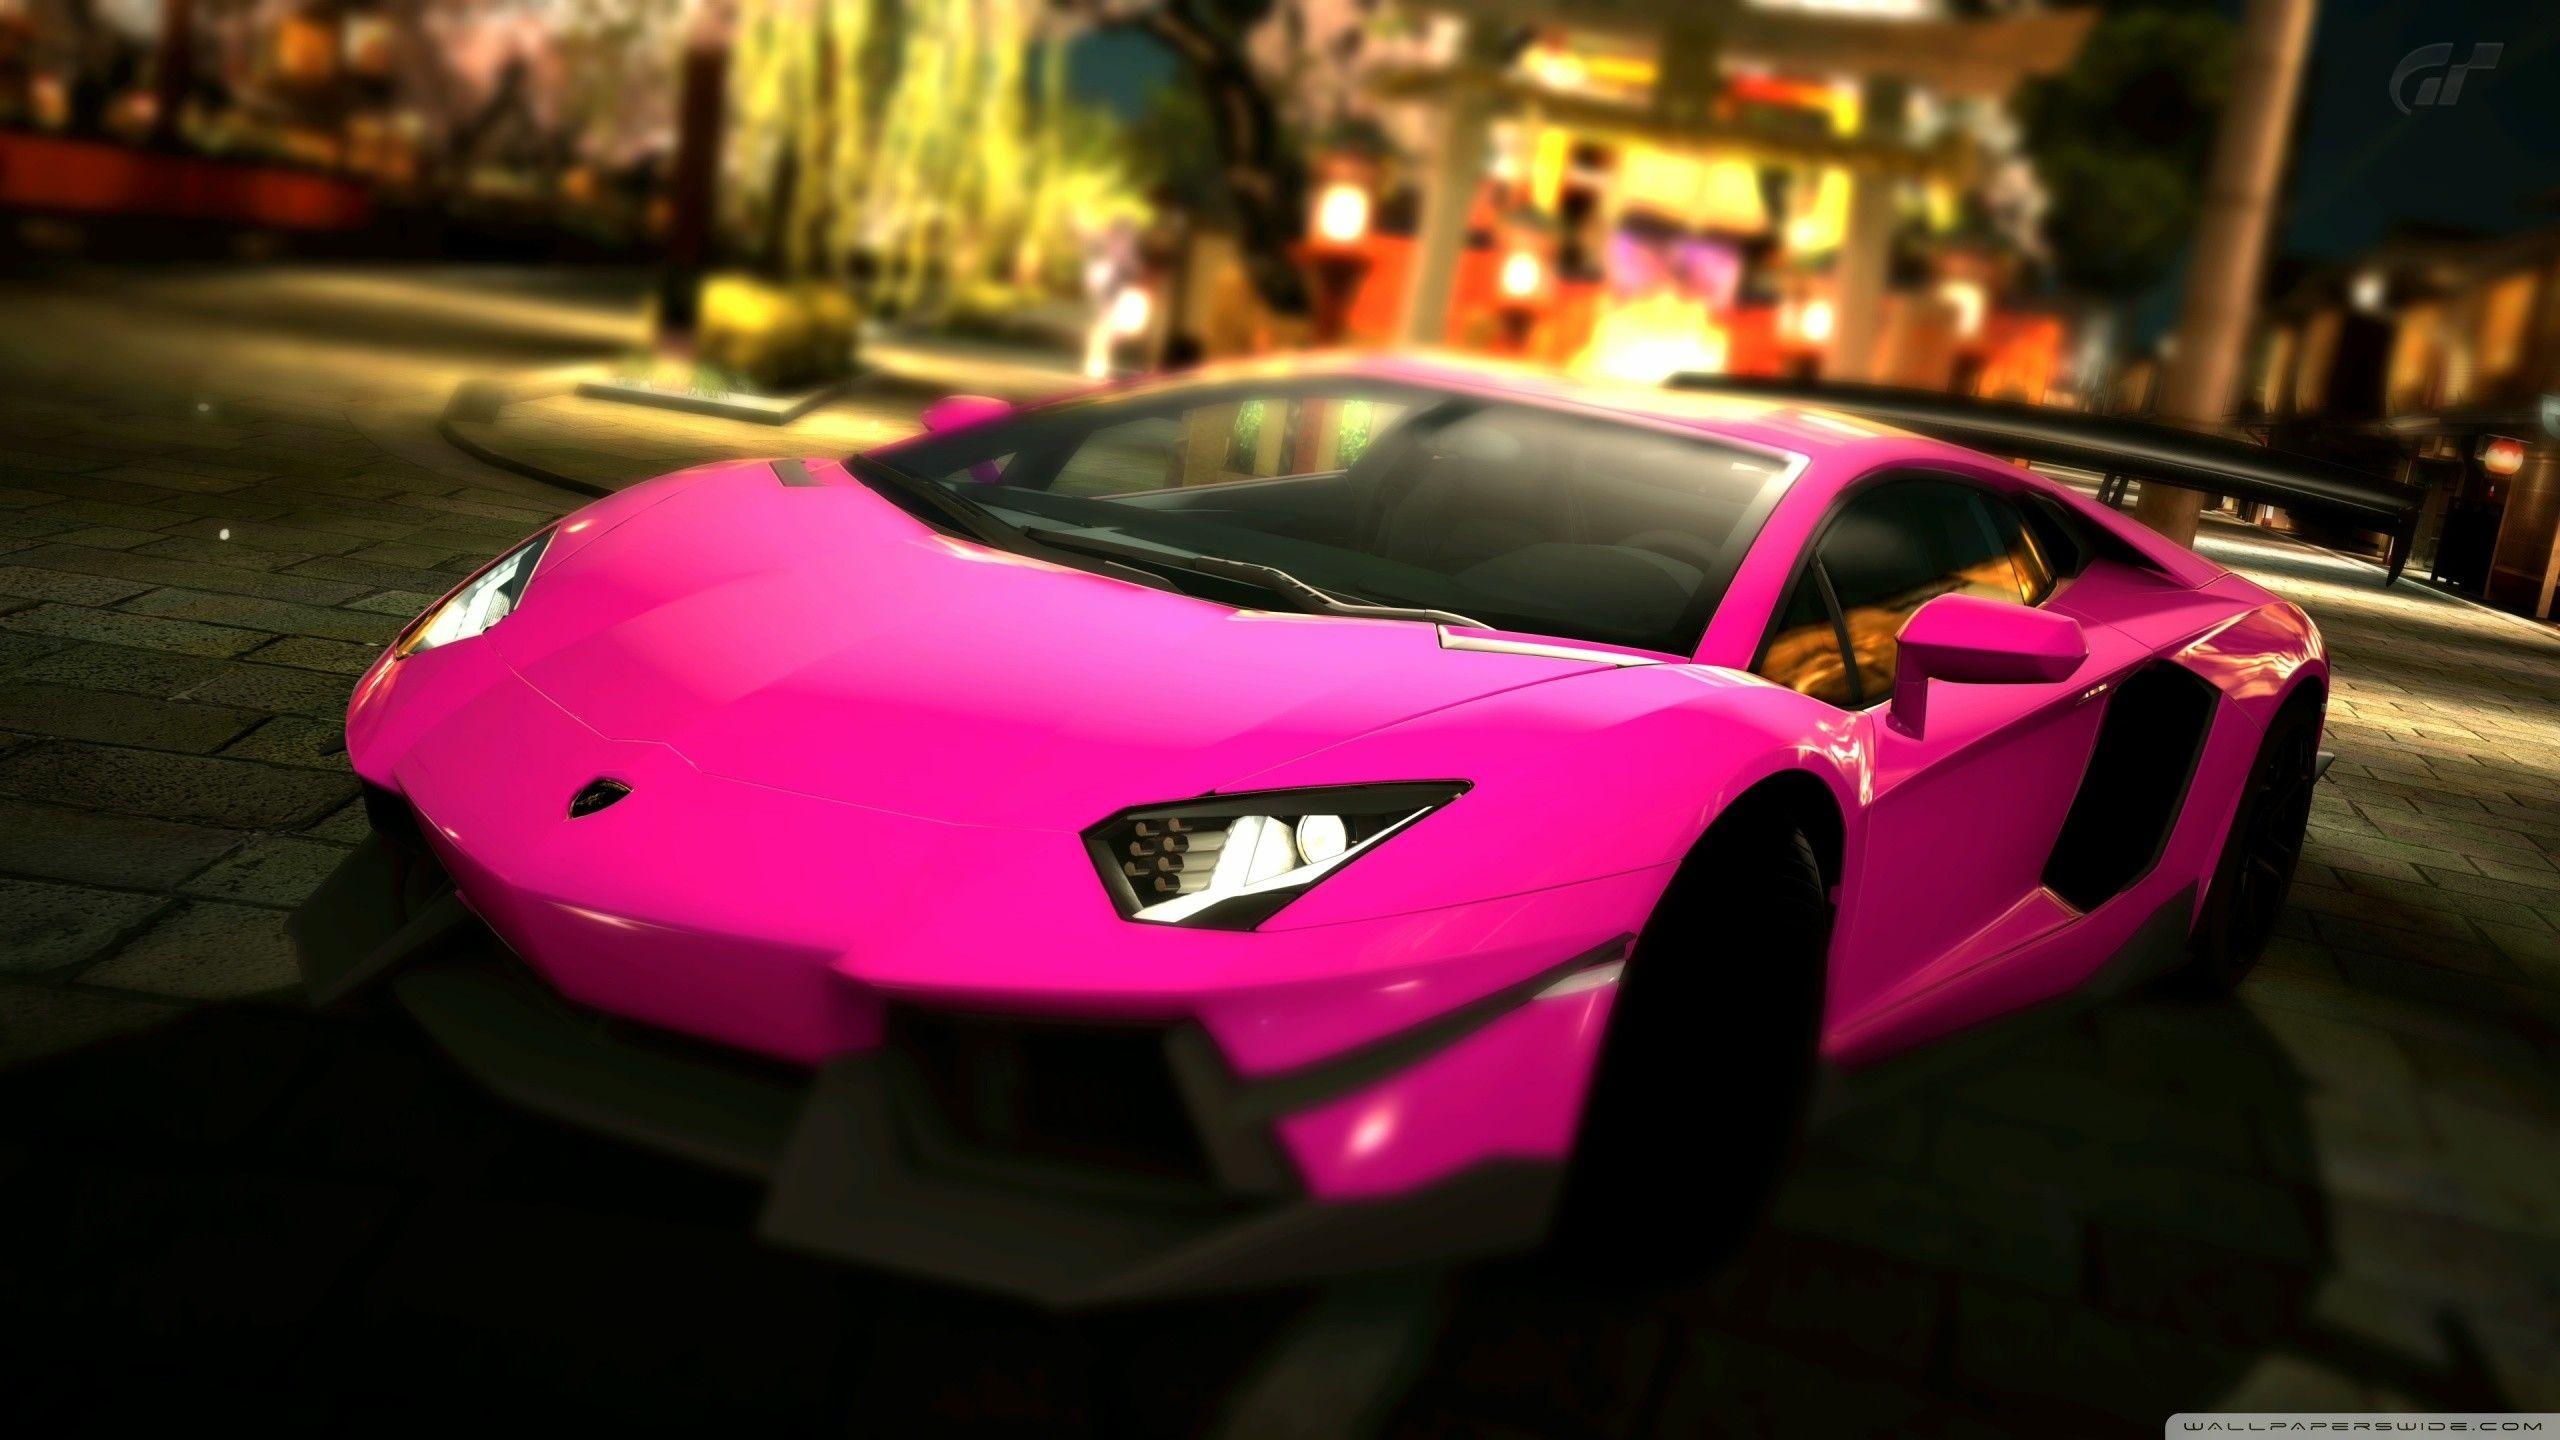 2560x1440 Hình nền Lamborghini màu hồng